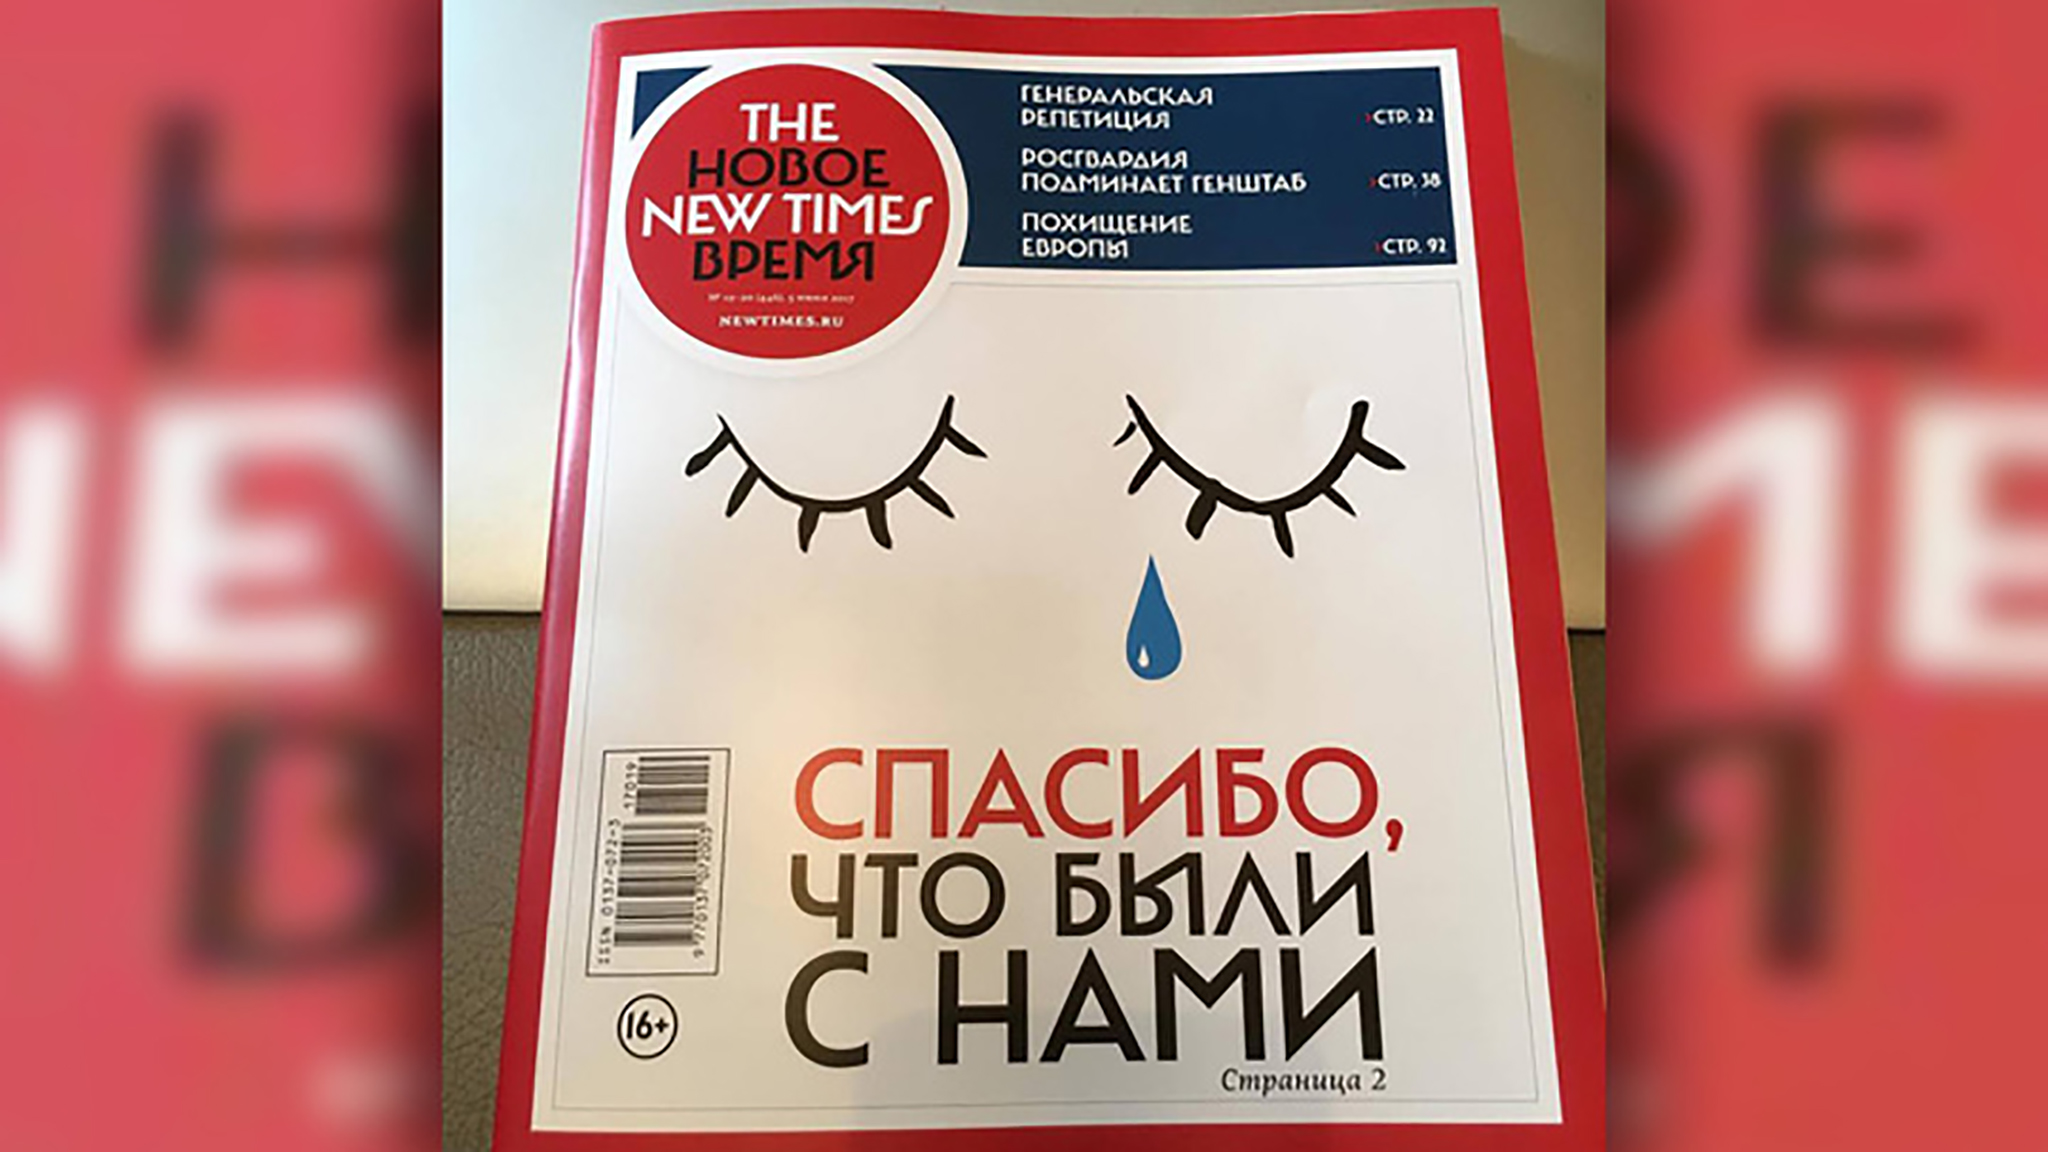 У РФ за чотири дні на підтримку The New Times пожертвували понад 21 млн руб – головред